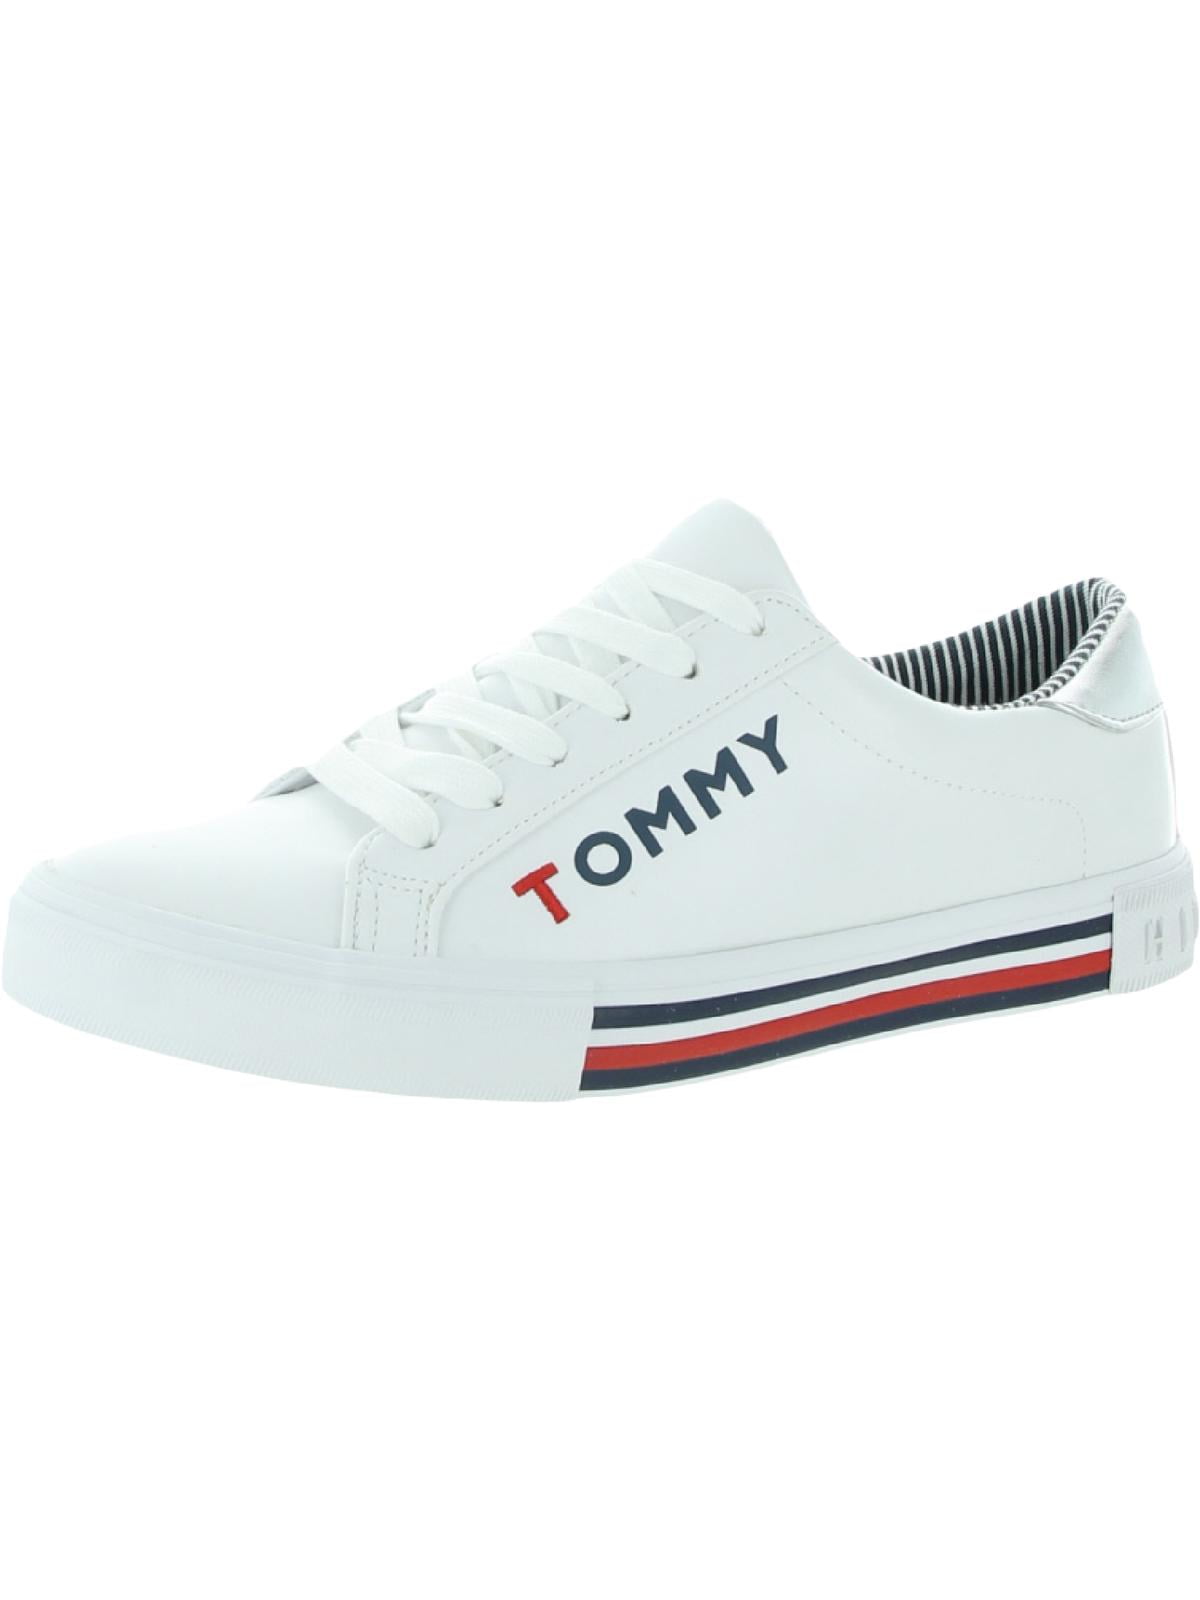 Tommy Hilfiger Womens Kery and Fashion White (B,M) - Walmart.com